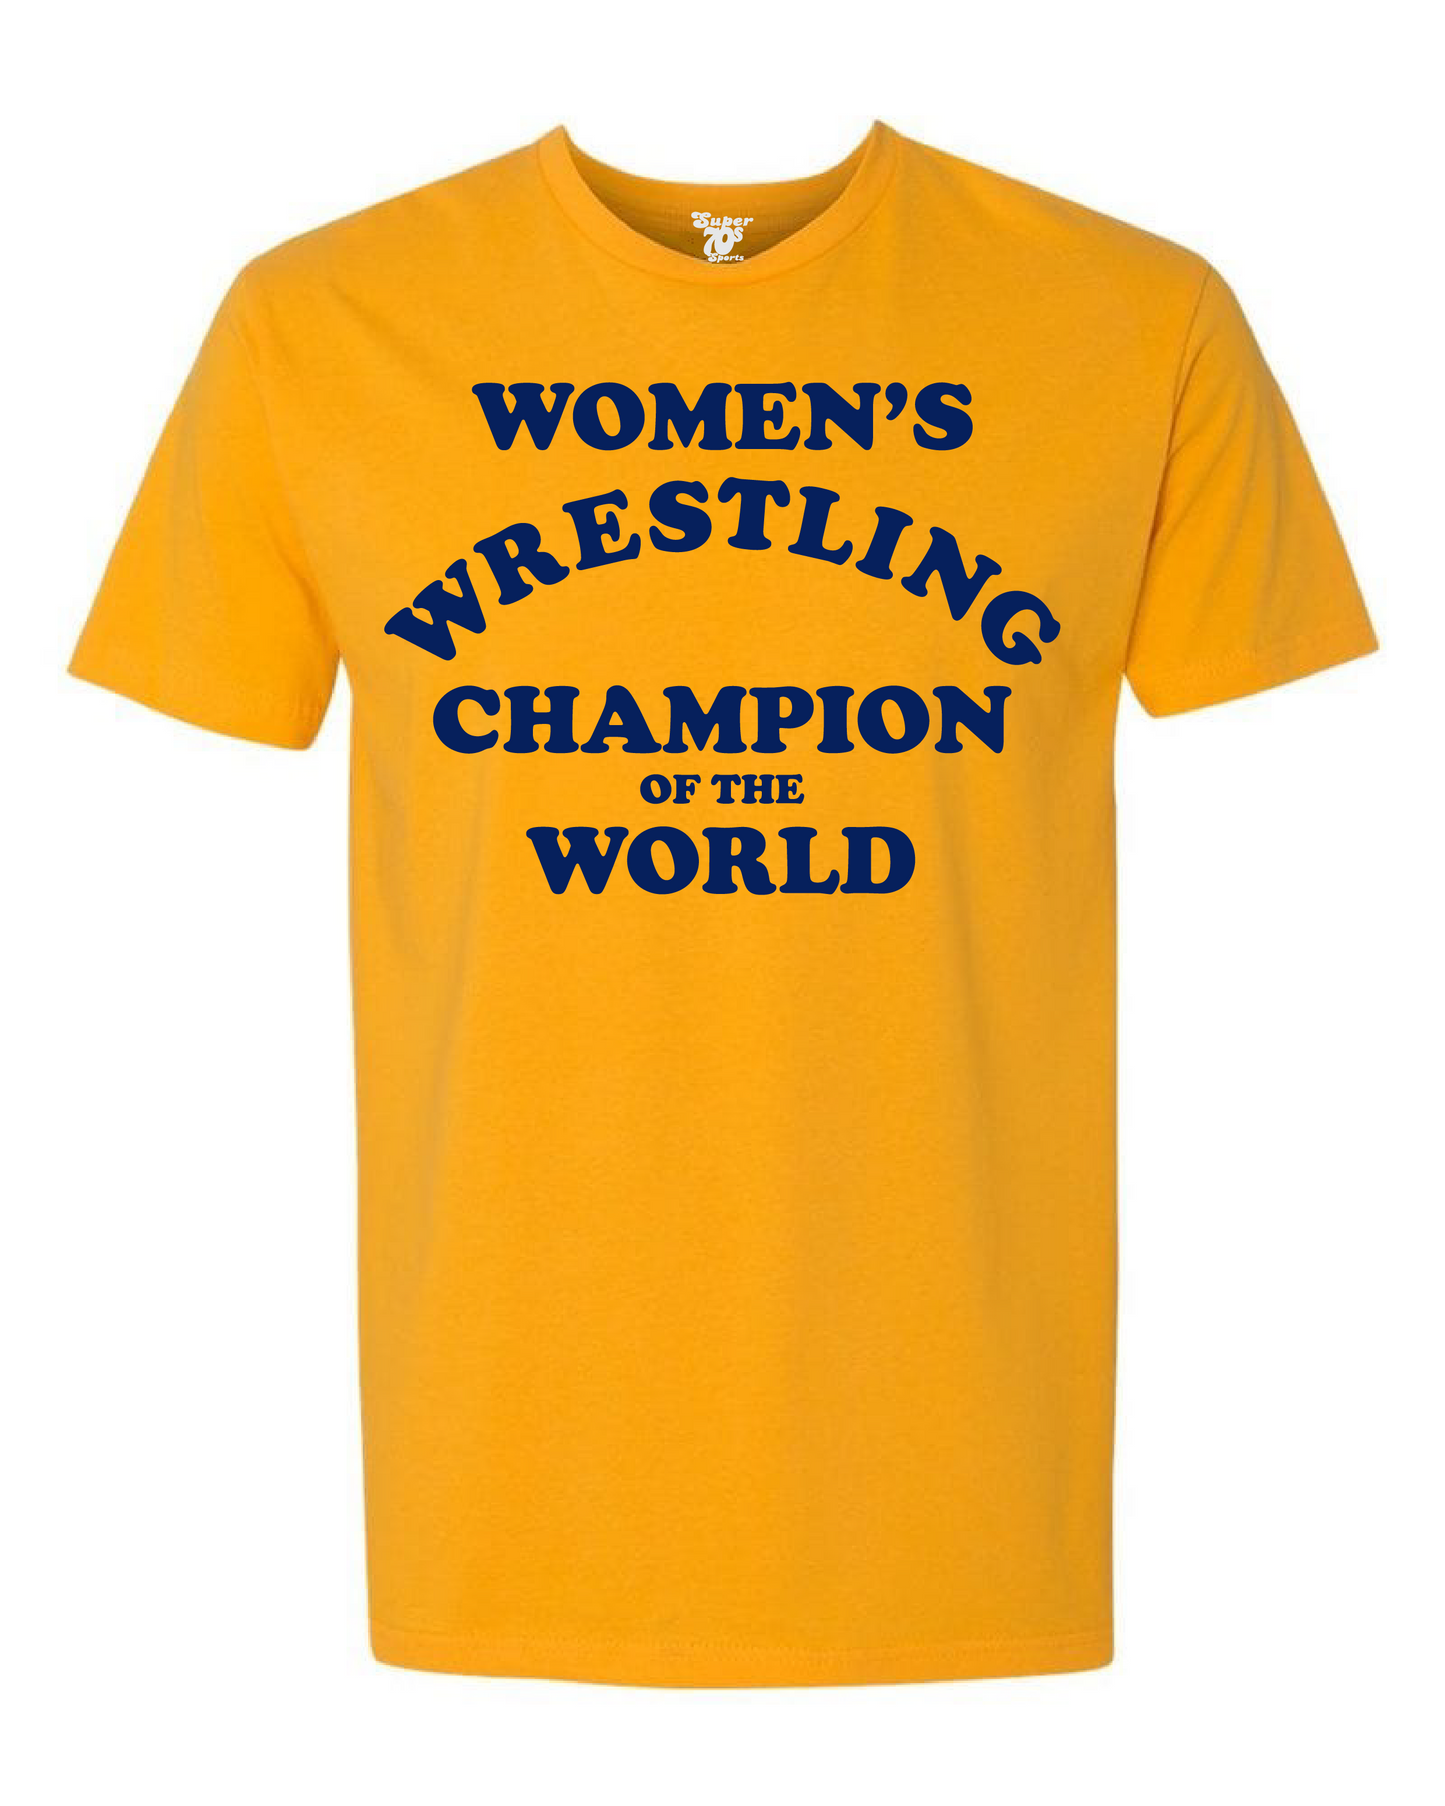 Women's Wrestling Champ Tee